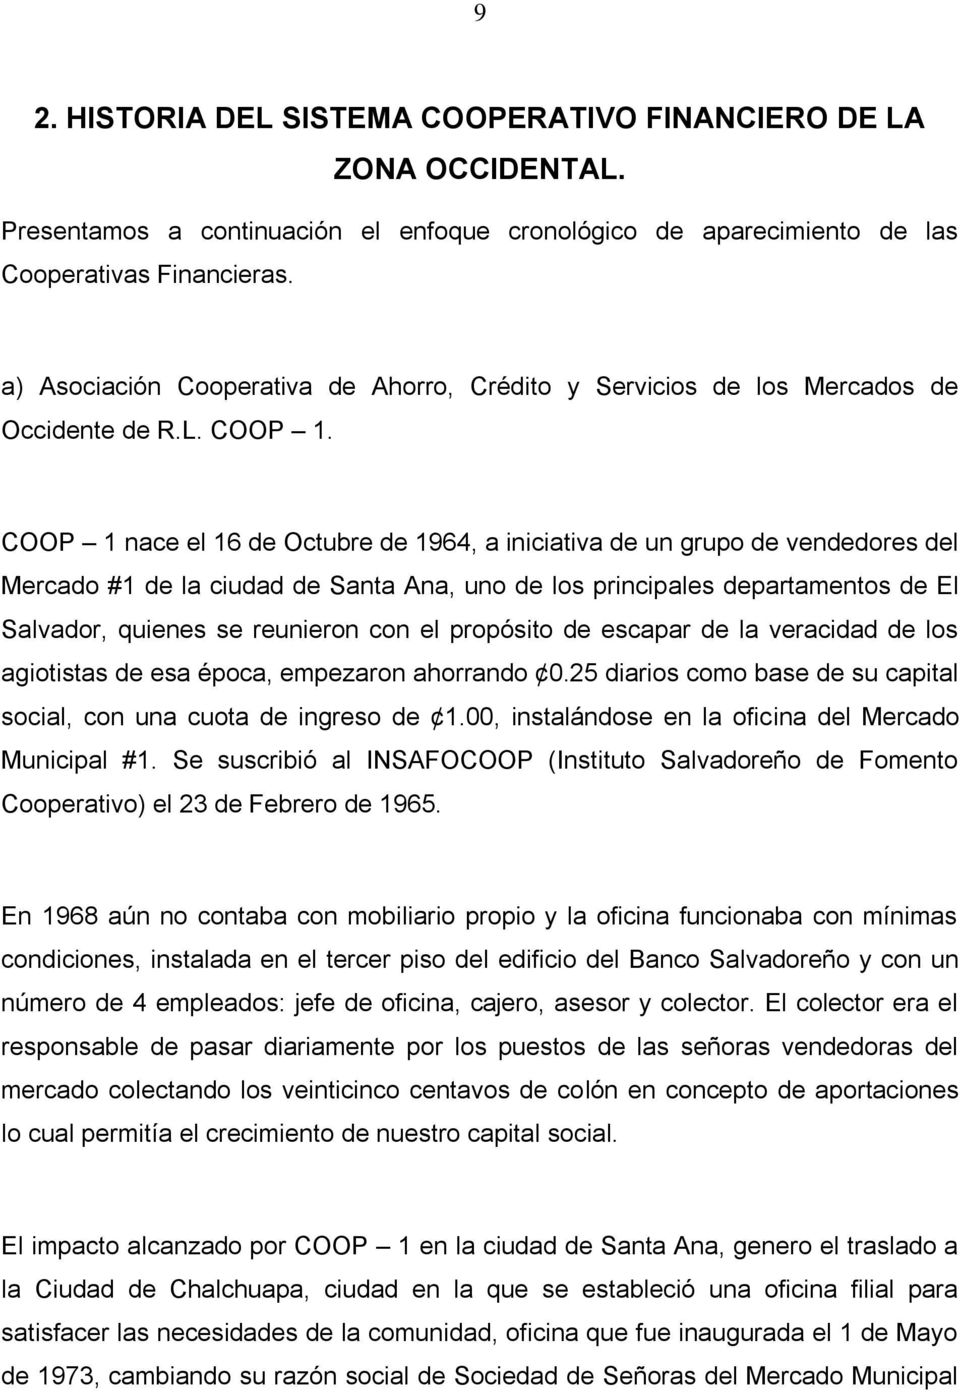 COOP 1 nace el 16 de Octubre de 1964, a iniciativa de un grupo de vendedores del Mercado #1 de la ciudad de Santa Ana, uno de los principales departamentos de El Salvador, quienes se reunieron con el